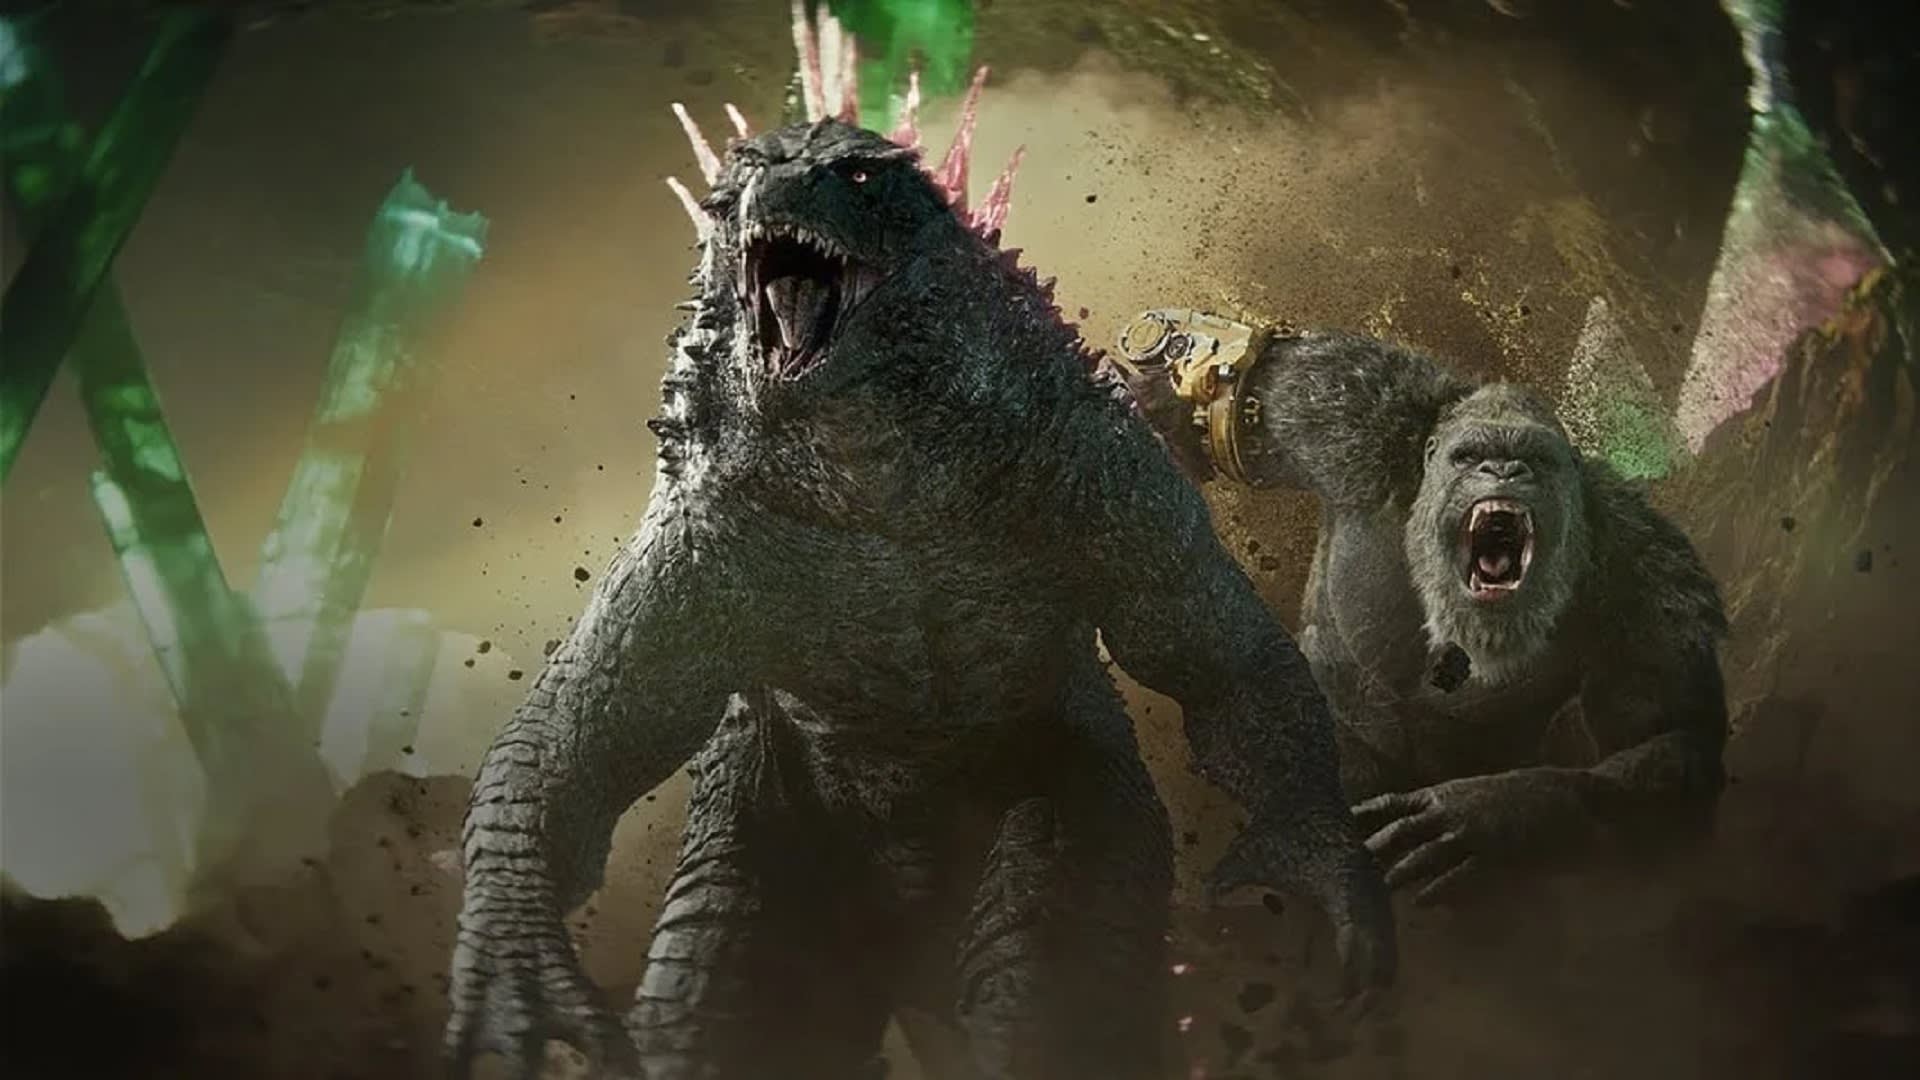 Godzilla x Kong: Nové impérium